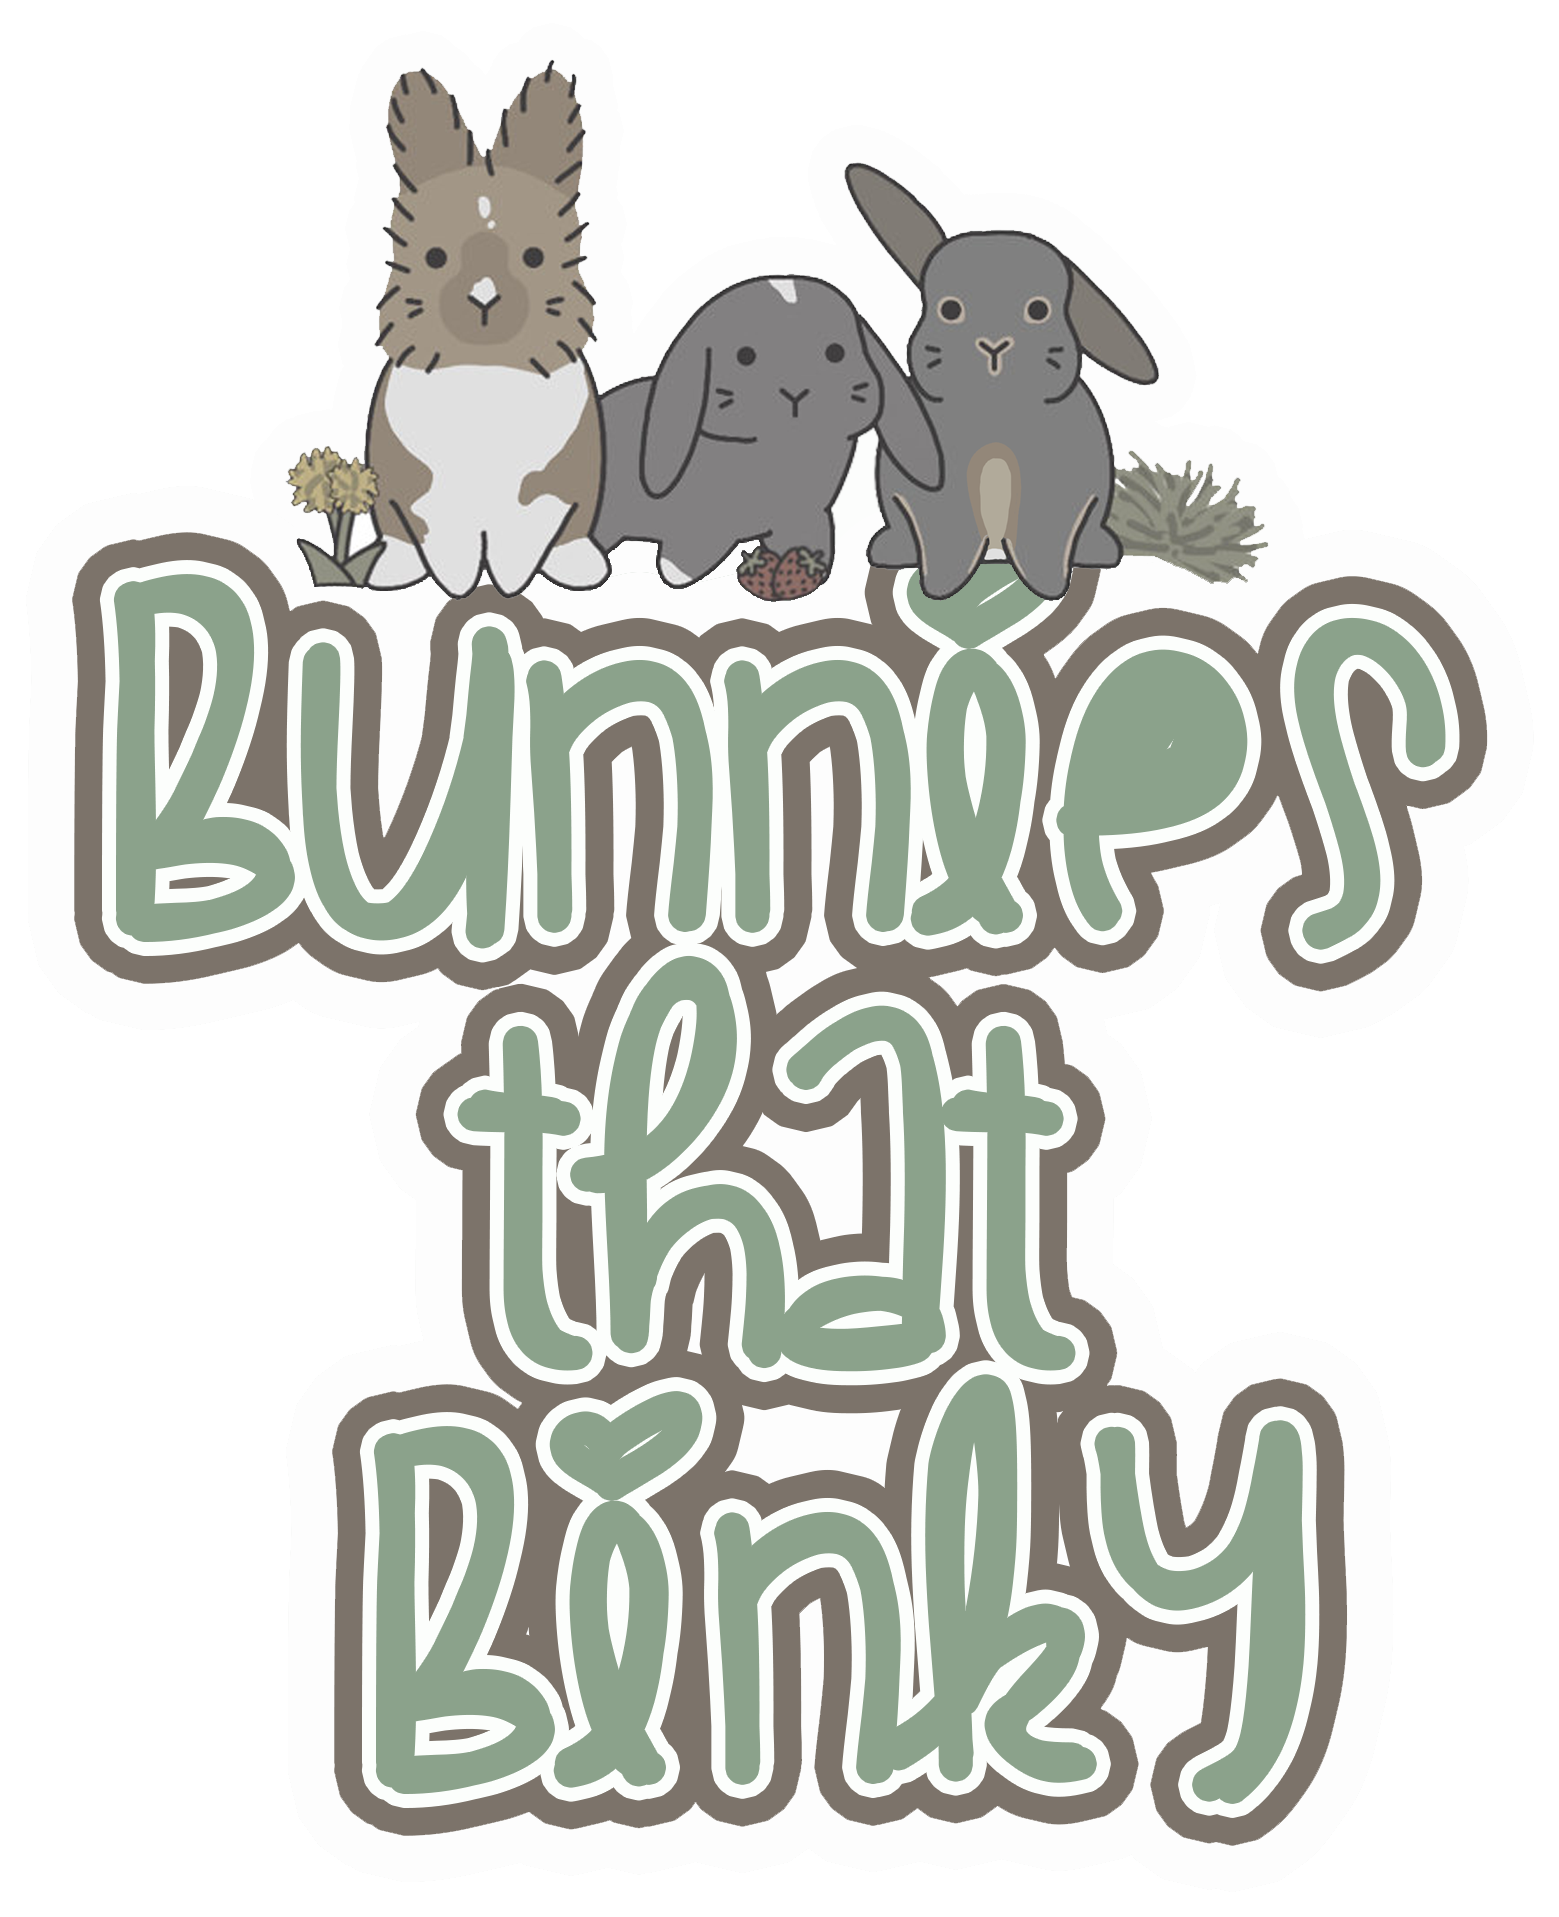 Bunnies That Binky